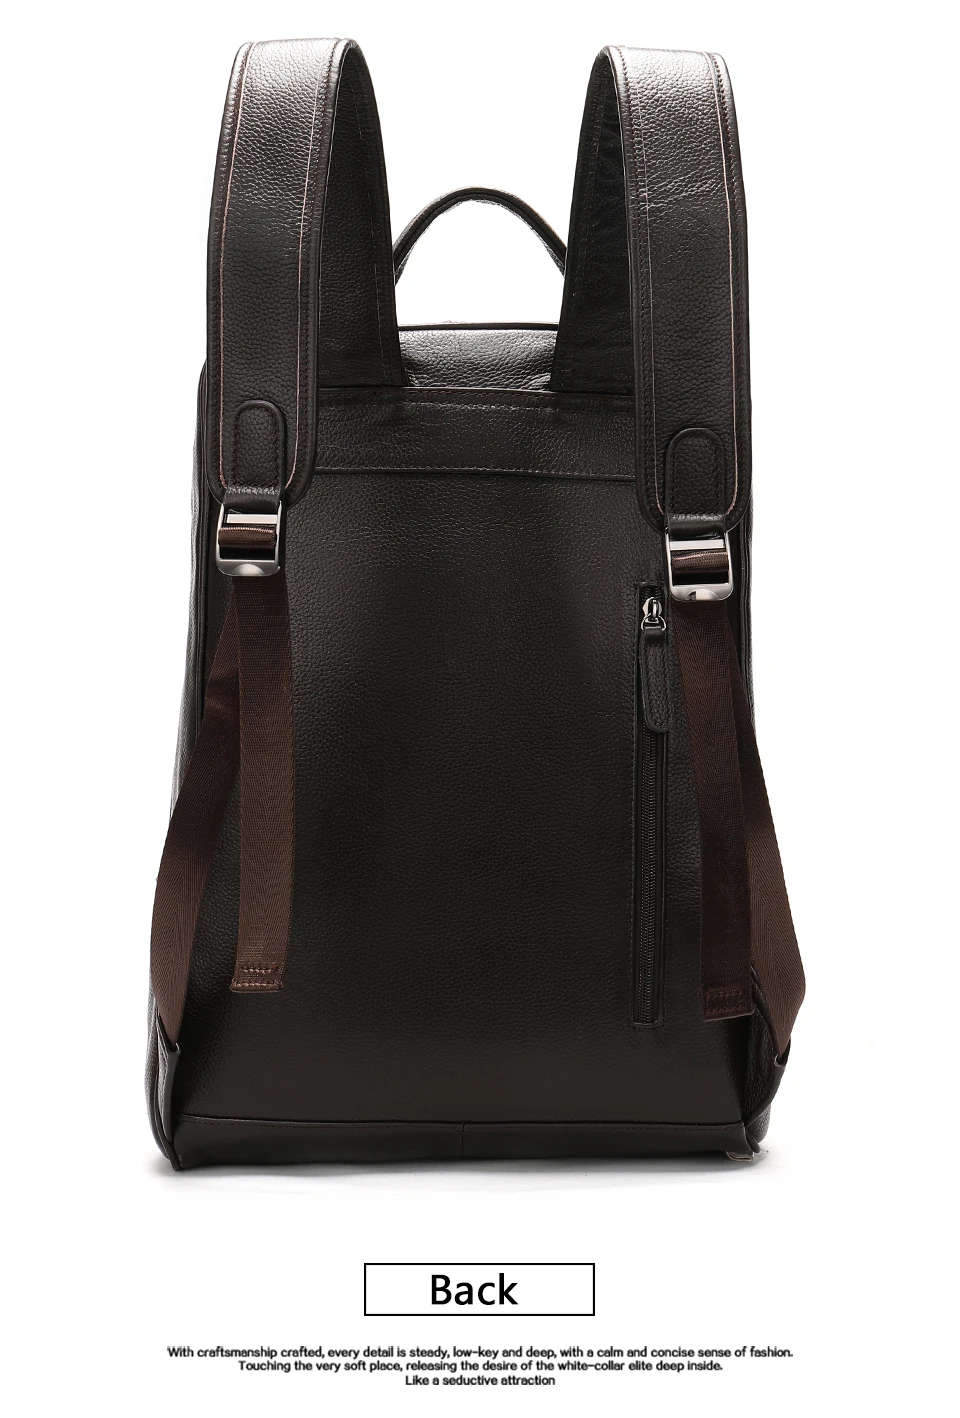 Мужской рюкзак, натуральный кожаный рюкзак, мужские рюкзаки для путешествий, мужские кожаные рюкзаки для ноутбука, винтажный Модный мужской рюкзак 8110